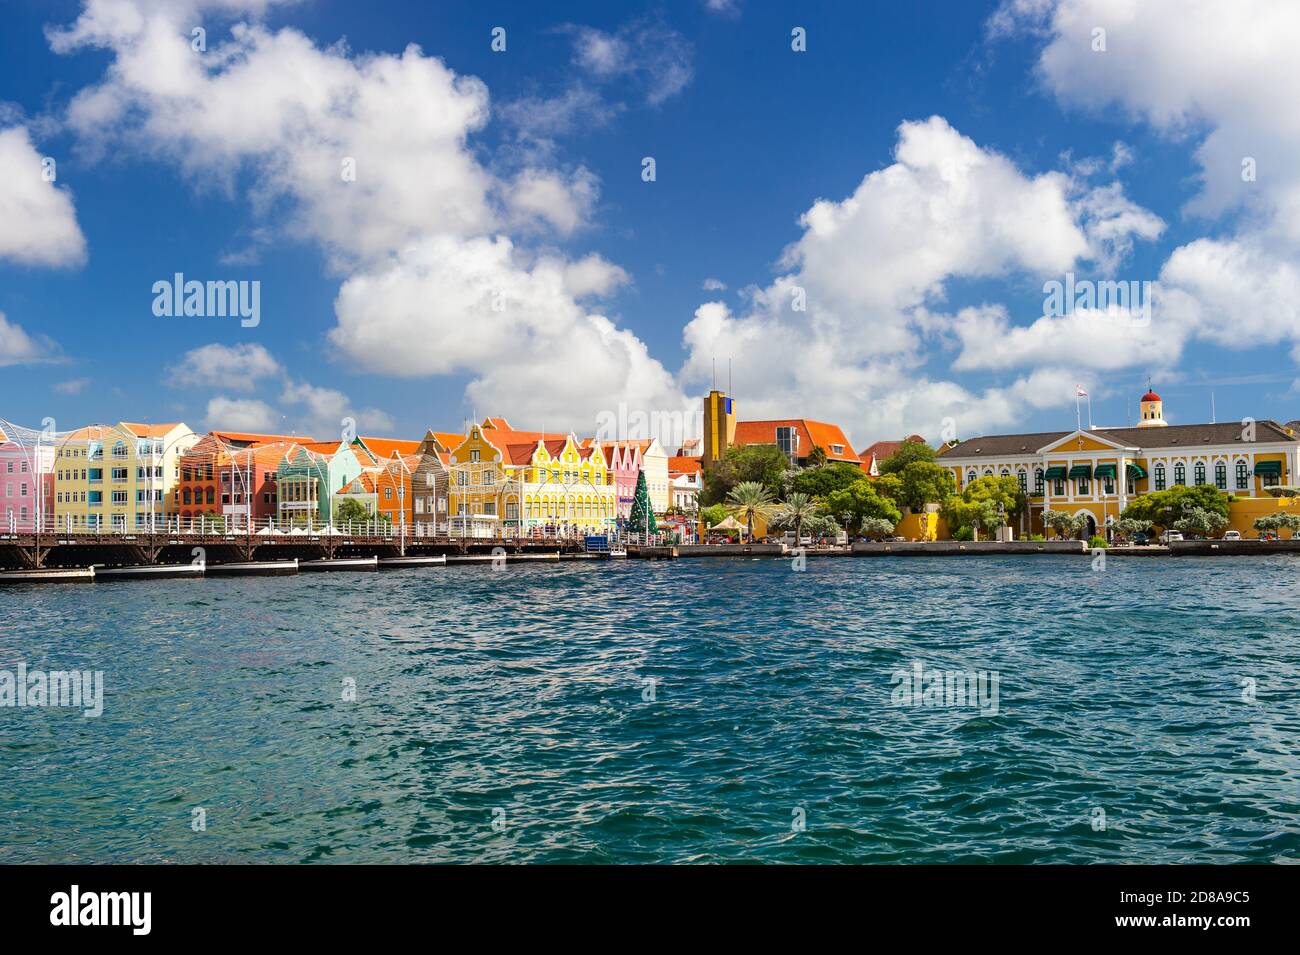 Curaçao, Antilles néerlandaises - 29 décembre 2016 : bâtiments colorés et ciel bleu dans le port de Willemstad Banque D'Images